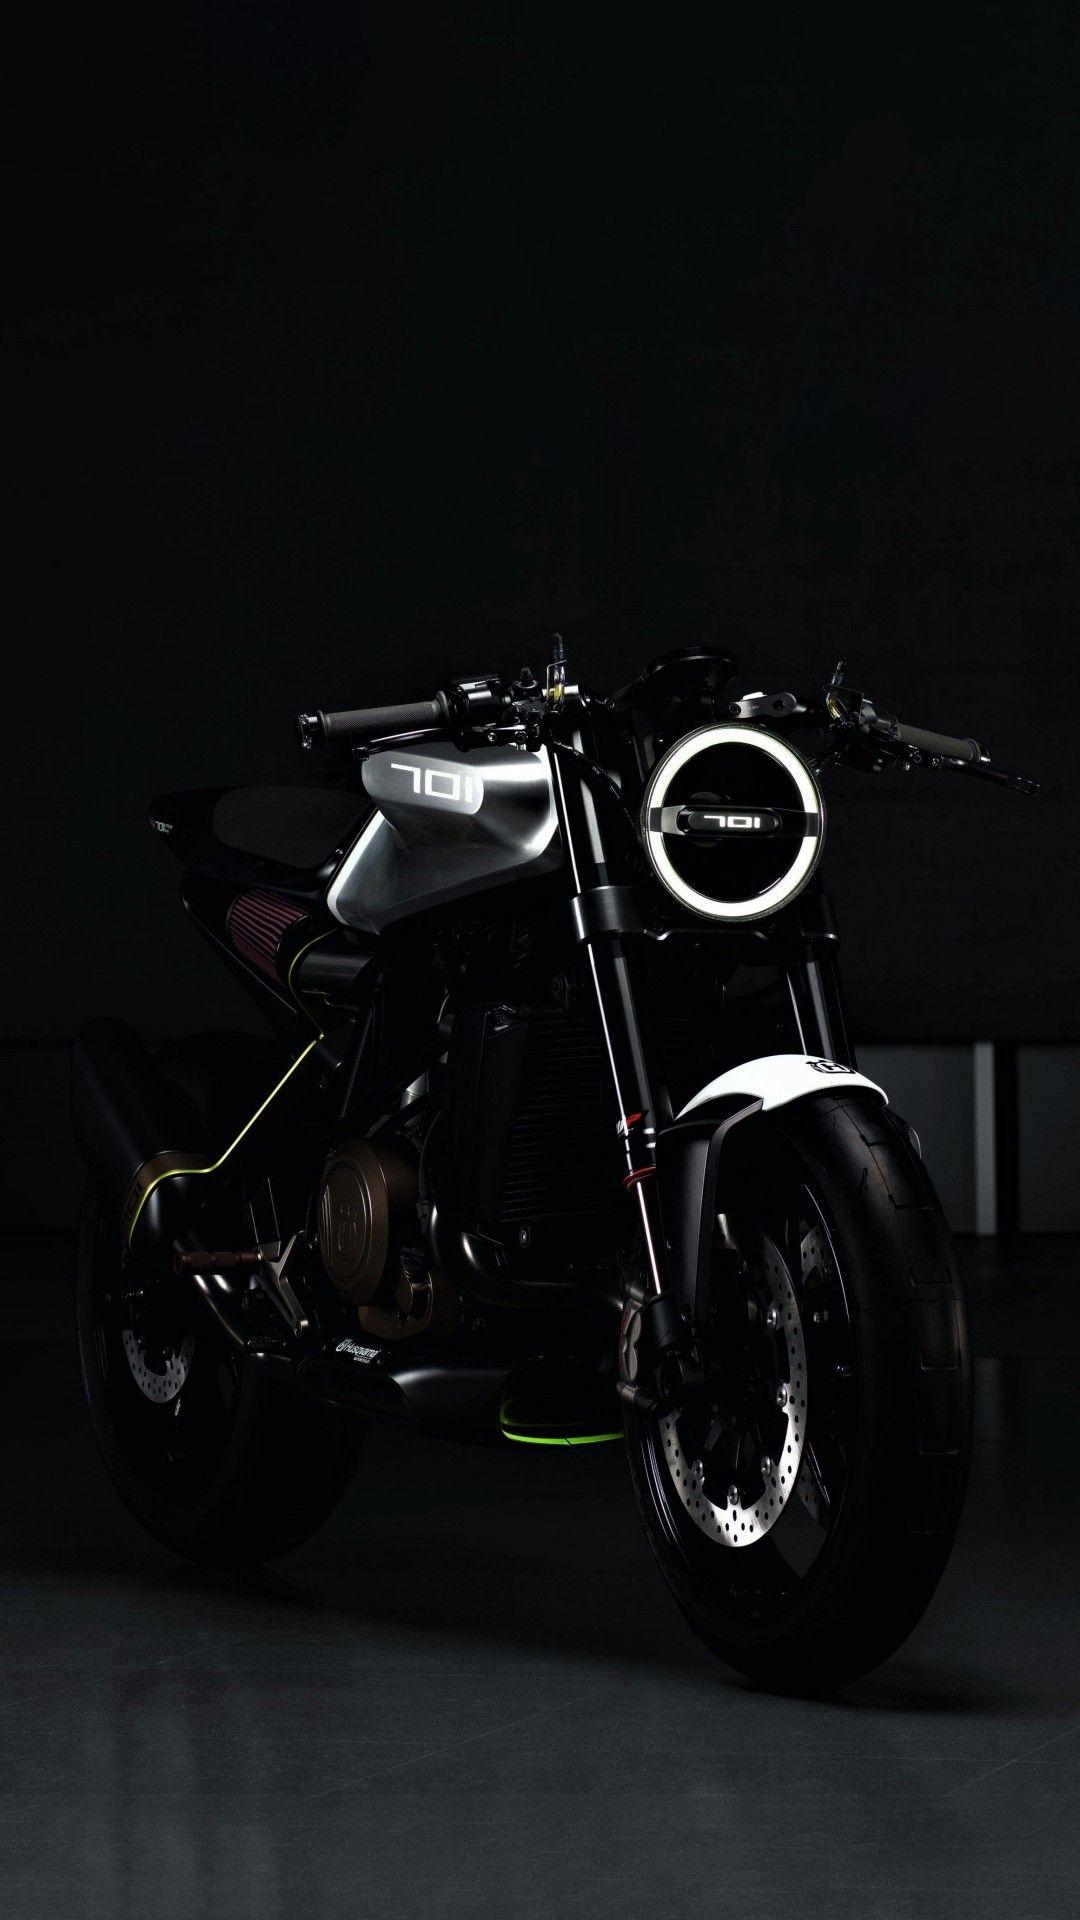 Black HD Motorcycle Wallpapers - Top Free Black HD Motorcycle